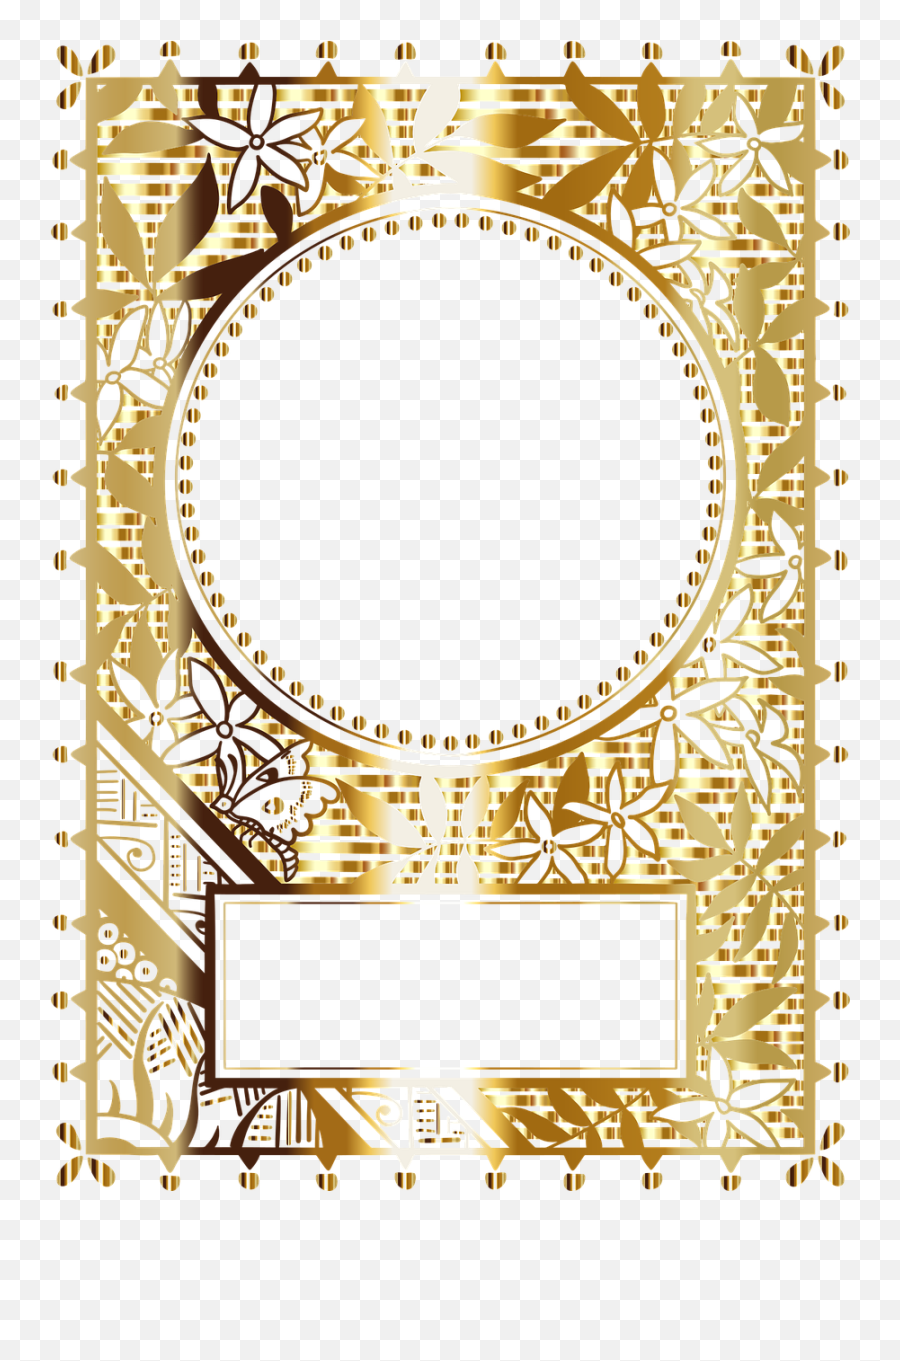 Frame Border Gold - Free Vector Graphic On Pixabay Emoji,Ornate Png